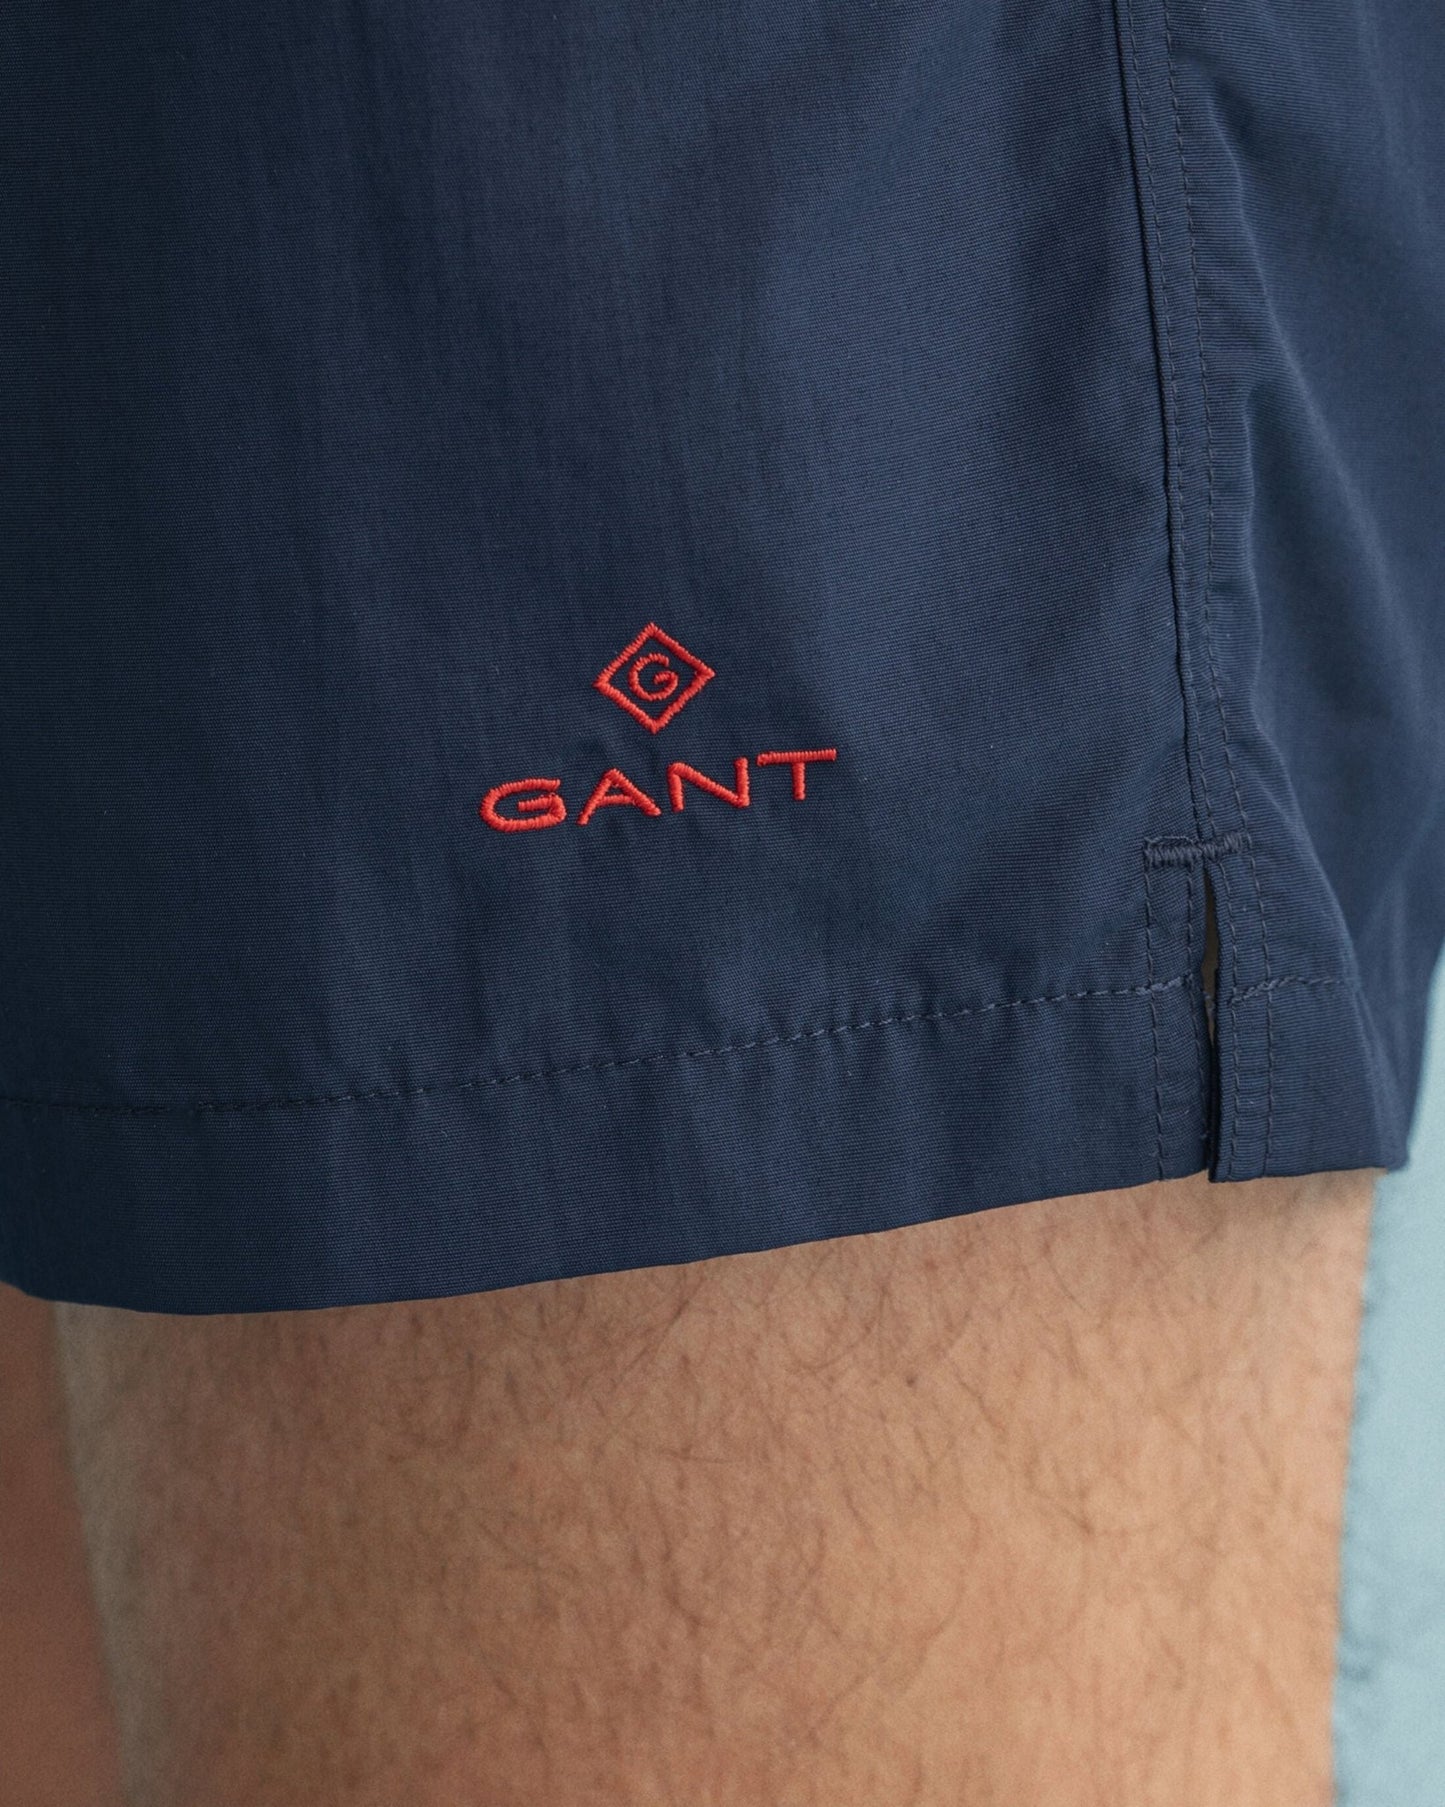 GANT Swim Shorts - Matt O'Brien Fashions